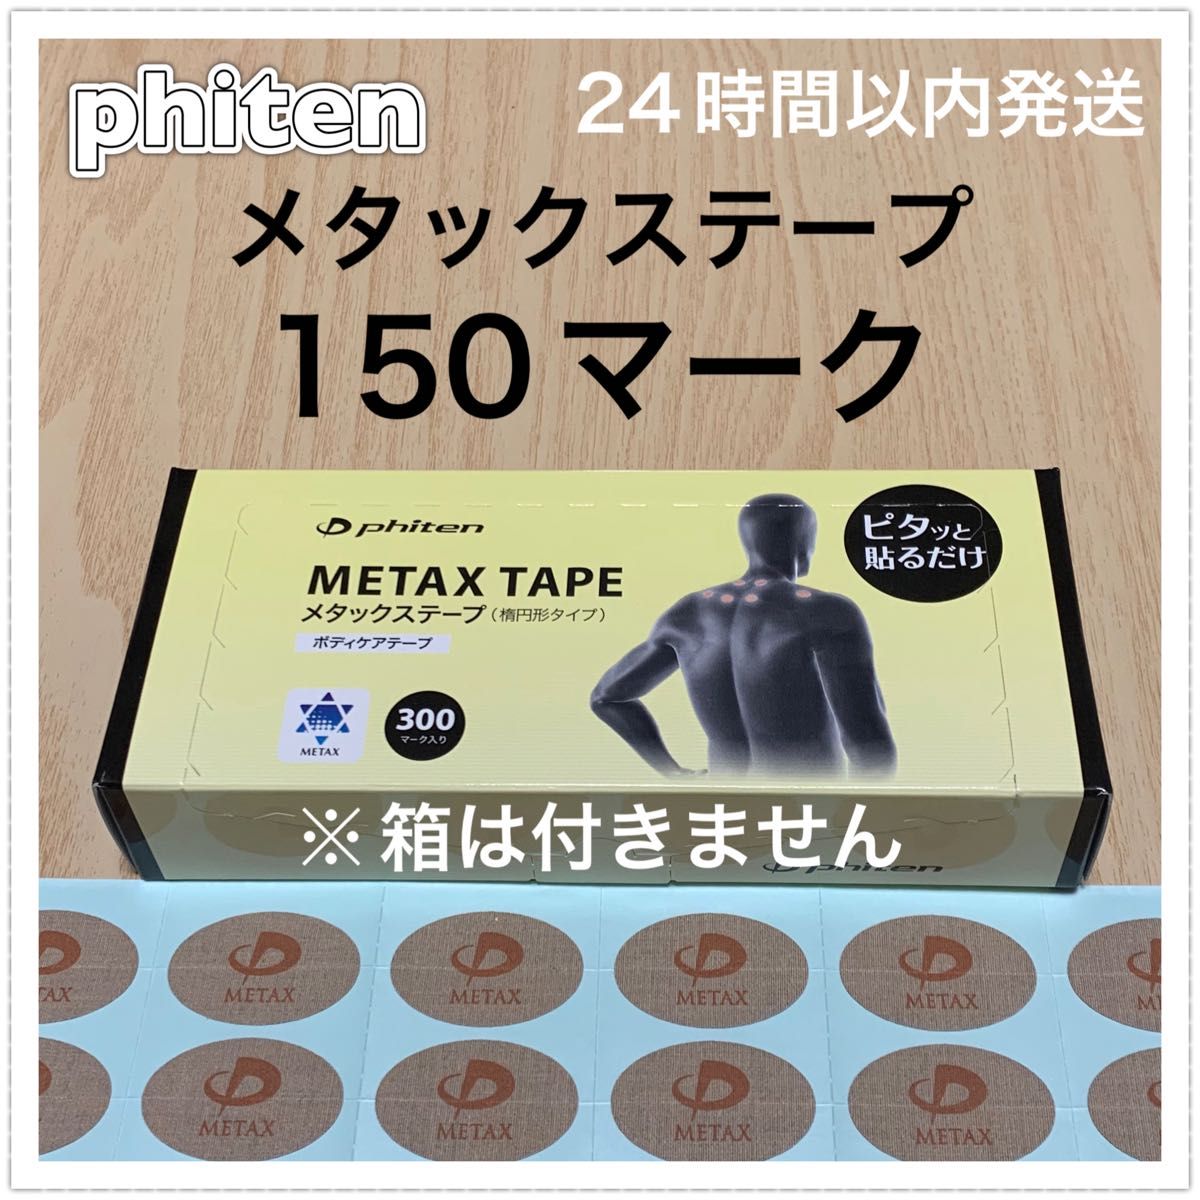 ファイテン メタックステープ 150マーク 呼吸・動作のサポート、筋肉痛の緩和に♪